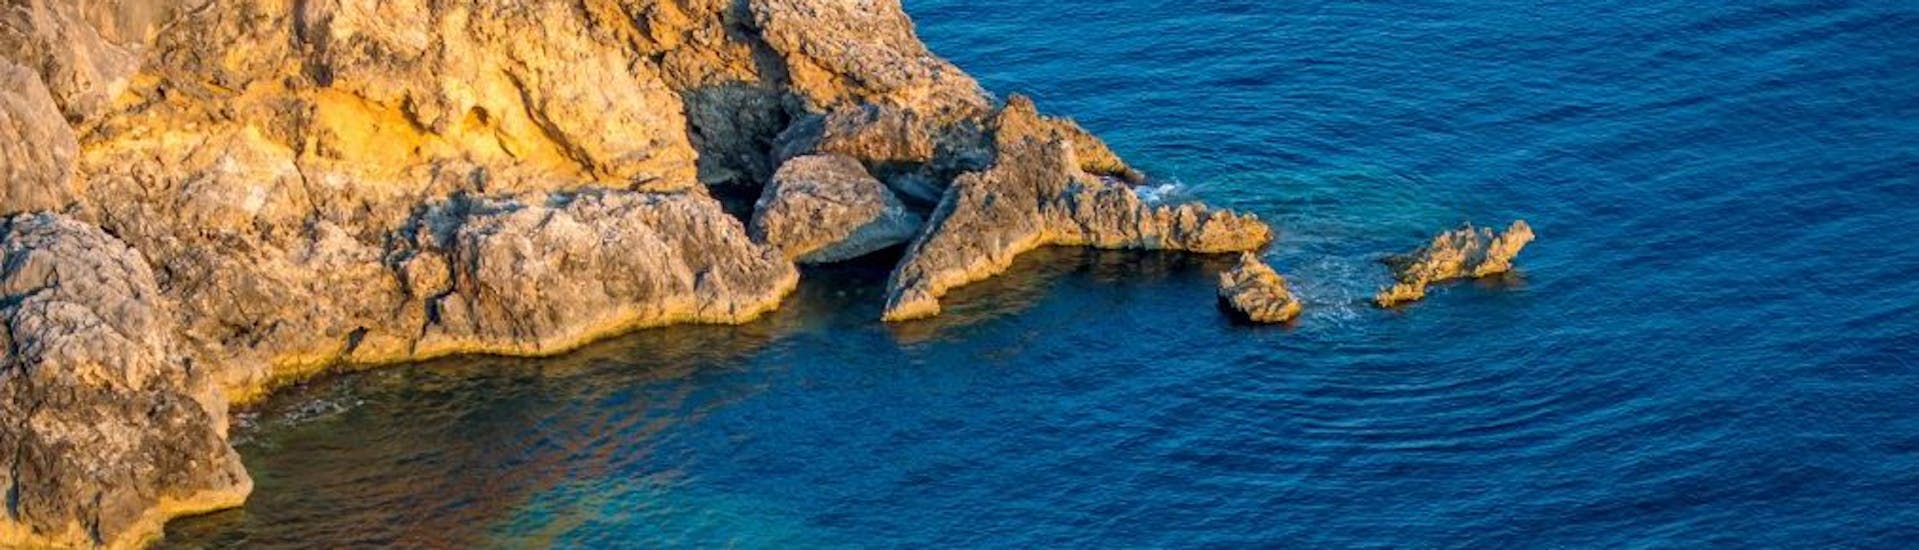 Magnifique paysage observé durant la Balade en bateau semi-rigide vers Monaco, la Grotte de la Mala et Nice depuis Villefranche-sur-Mer avec Glisse Evasion Côte d'Azur.